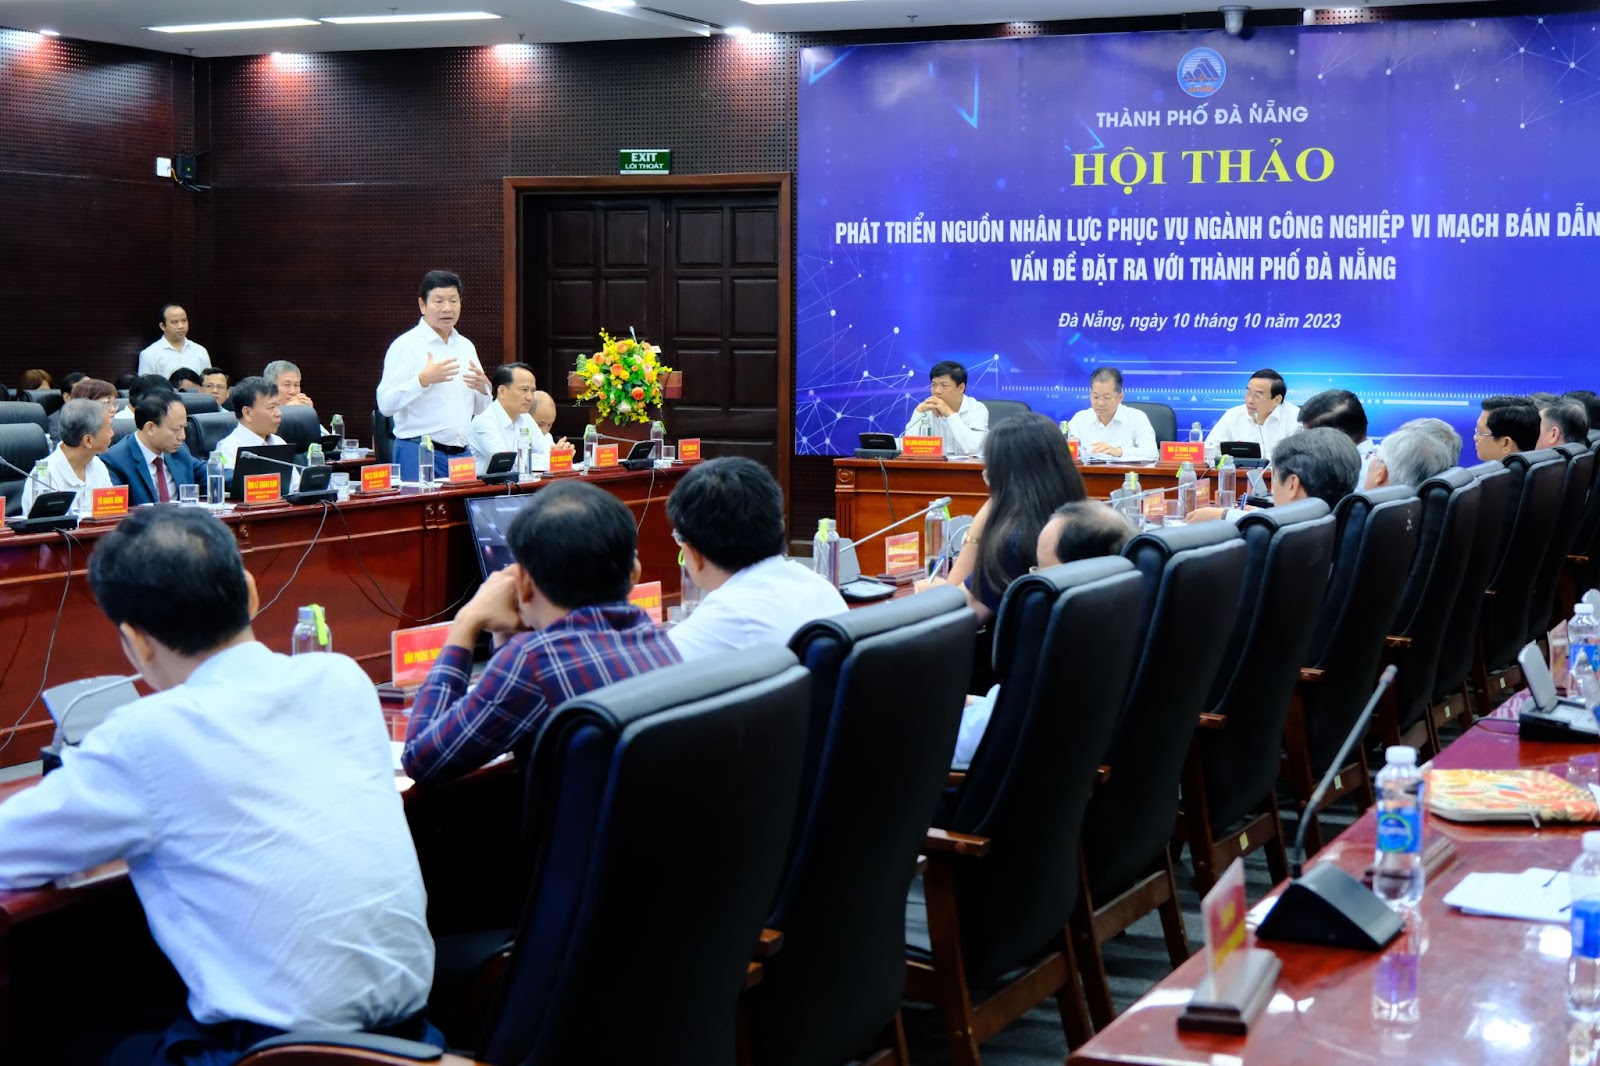 Chủ tịch FPT - Trương Gia Bình: Đà Nẵng sẽ có tên trong hệ sinh thái vi mạch bán dẫn thế giới - Ảnh 1.